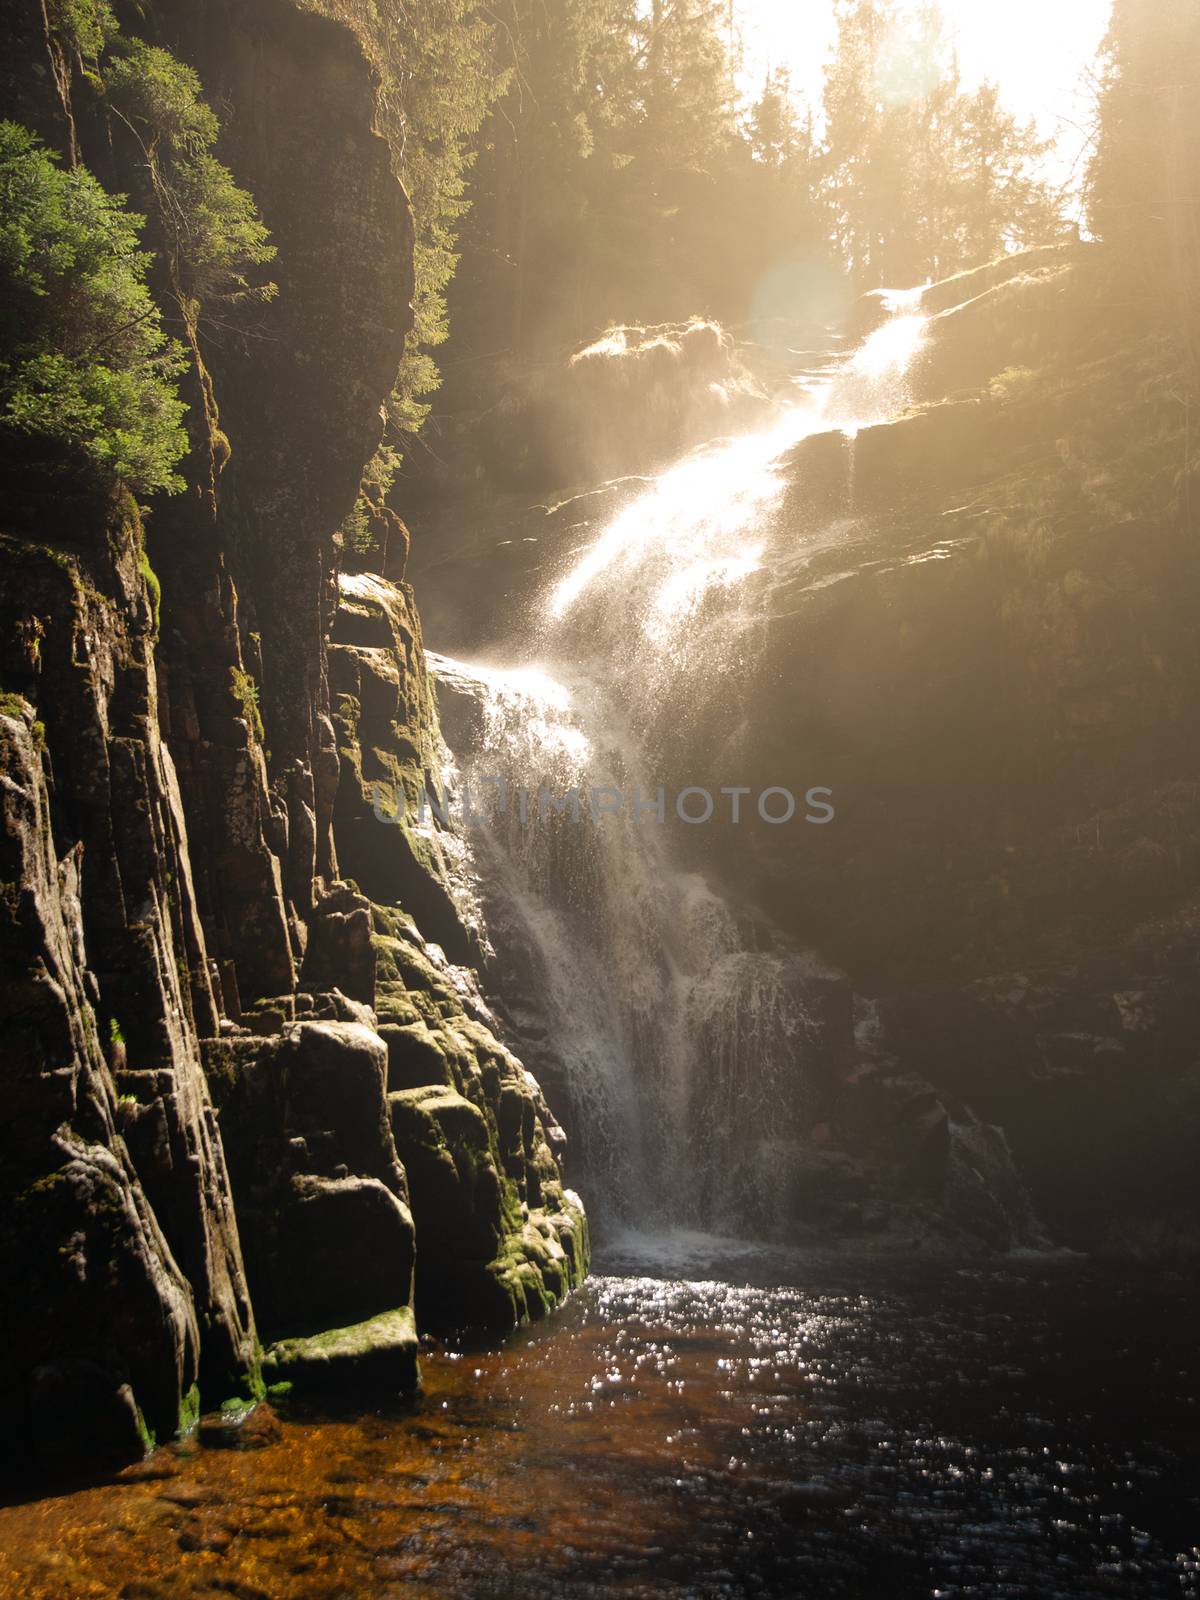 Kamienczyk waterfall near SzklarskaPoreba in Giant mountains or Karkonosze, Poland. Long time exposure.